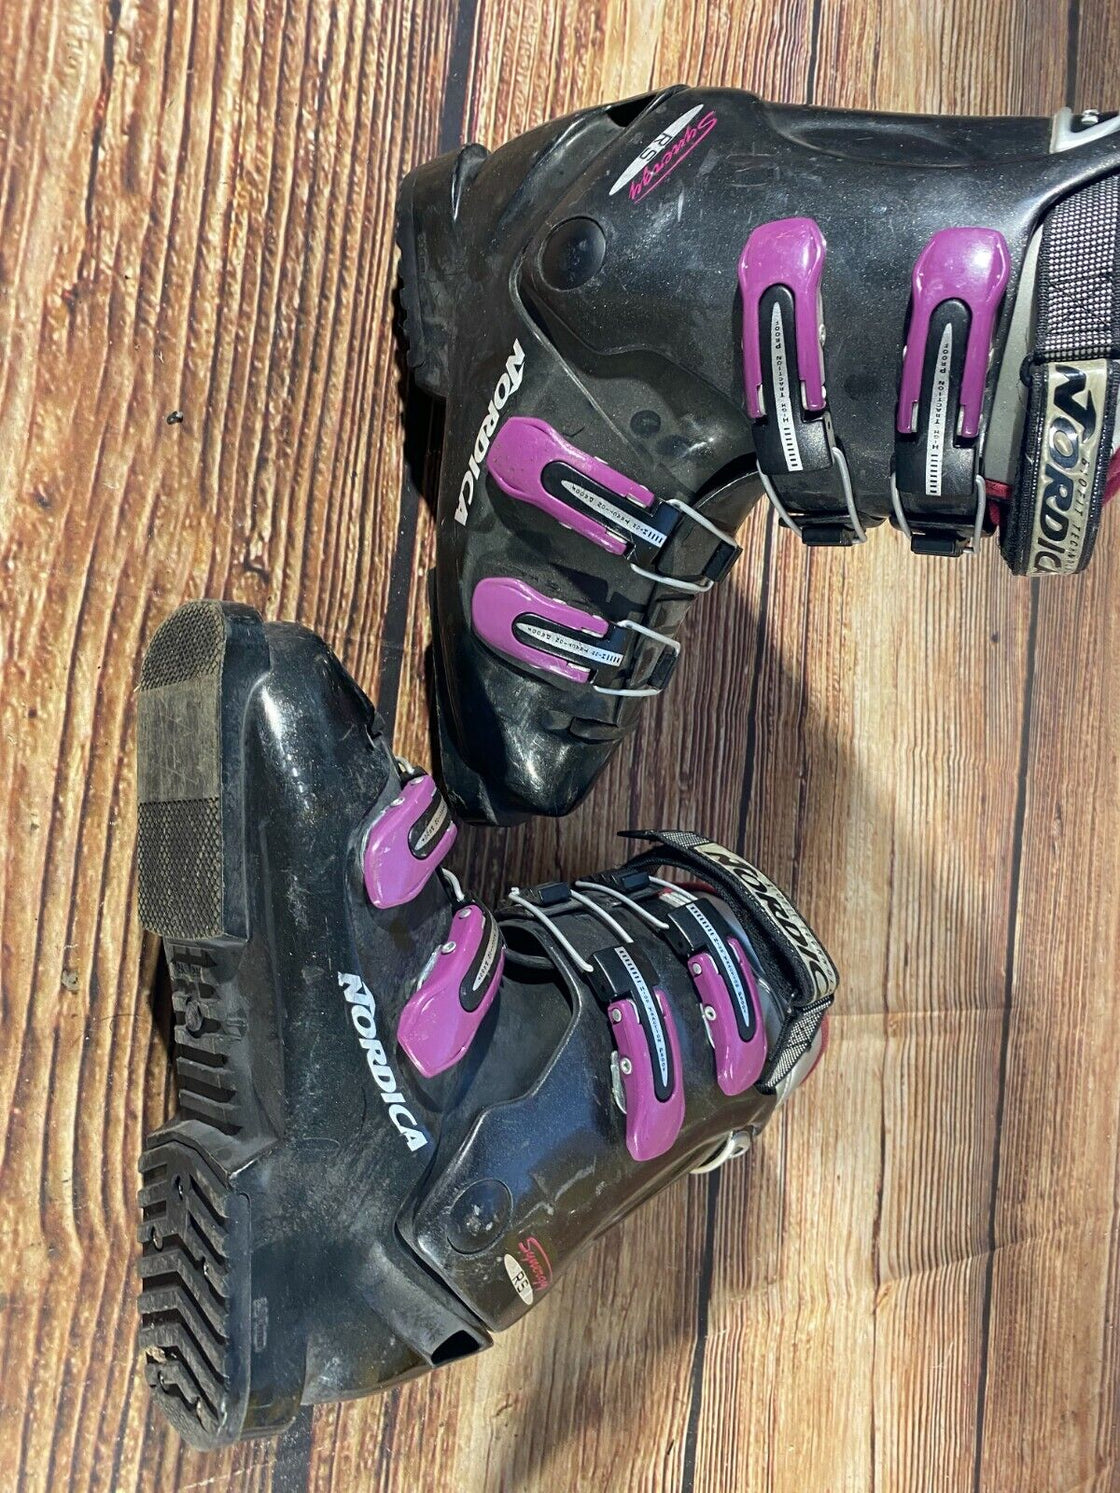 NORDICA Alpine Ski Boots Size Mondo 250 - 255 mm, Outer Sole 290mm